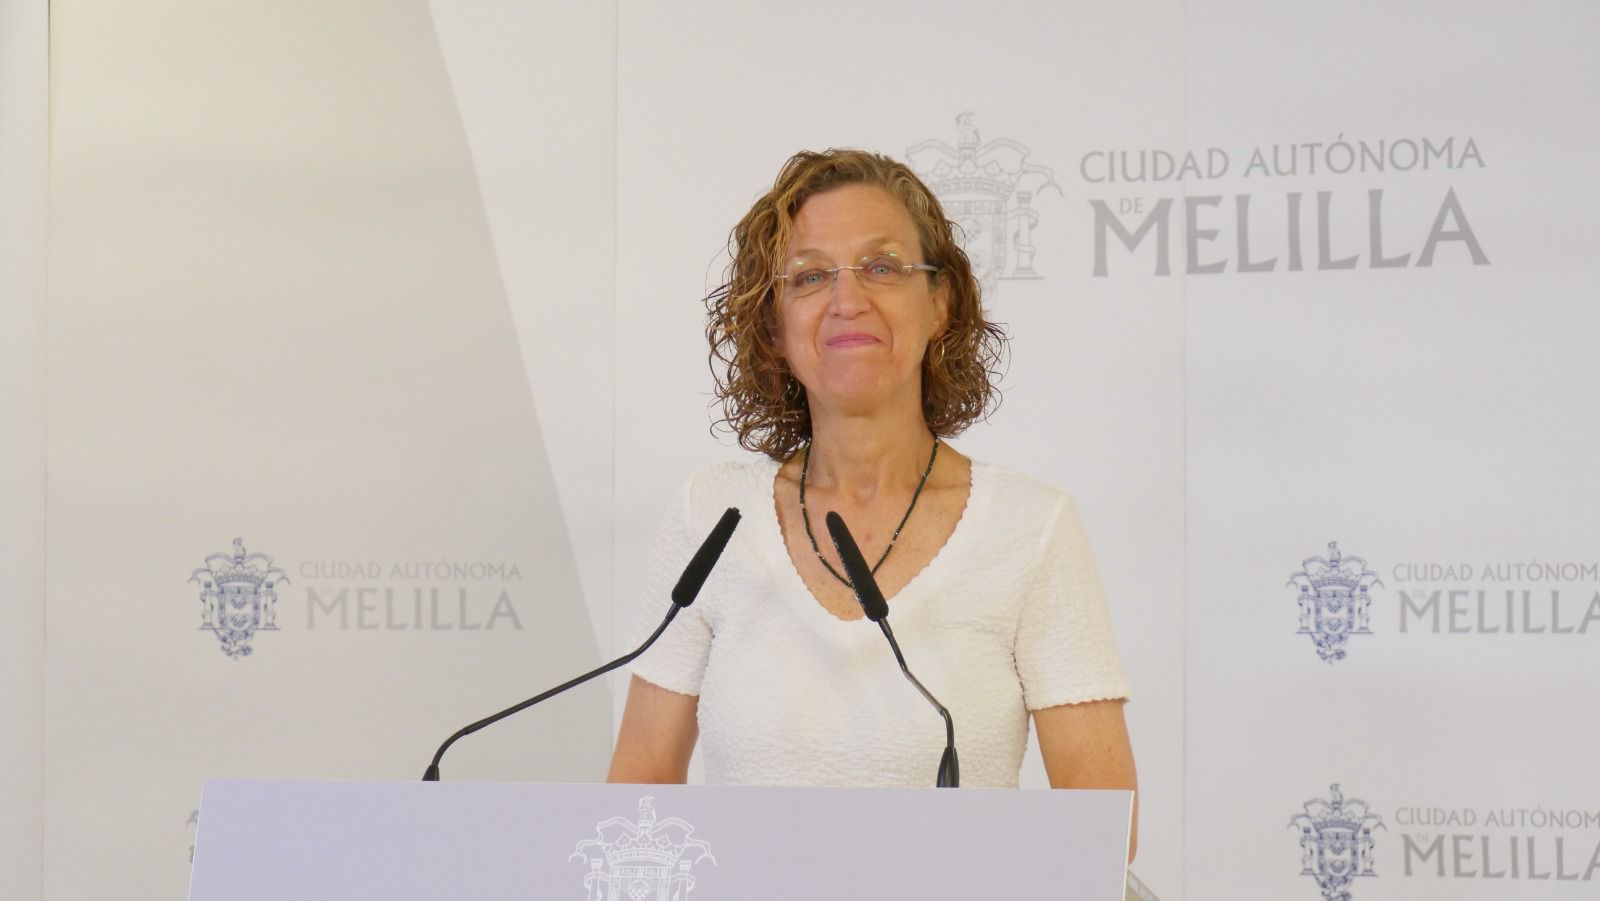 La vicepresidenta de la ciudad autónoma de Melilla, Gloria Rojas.